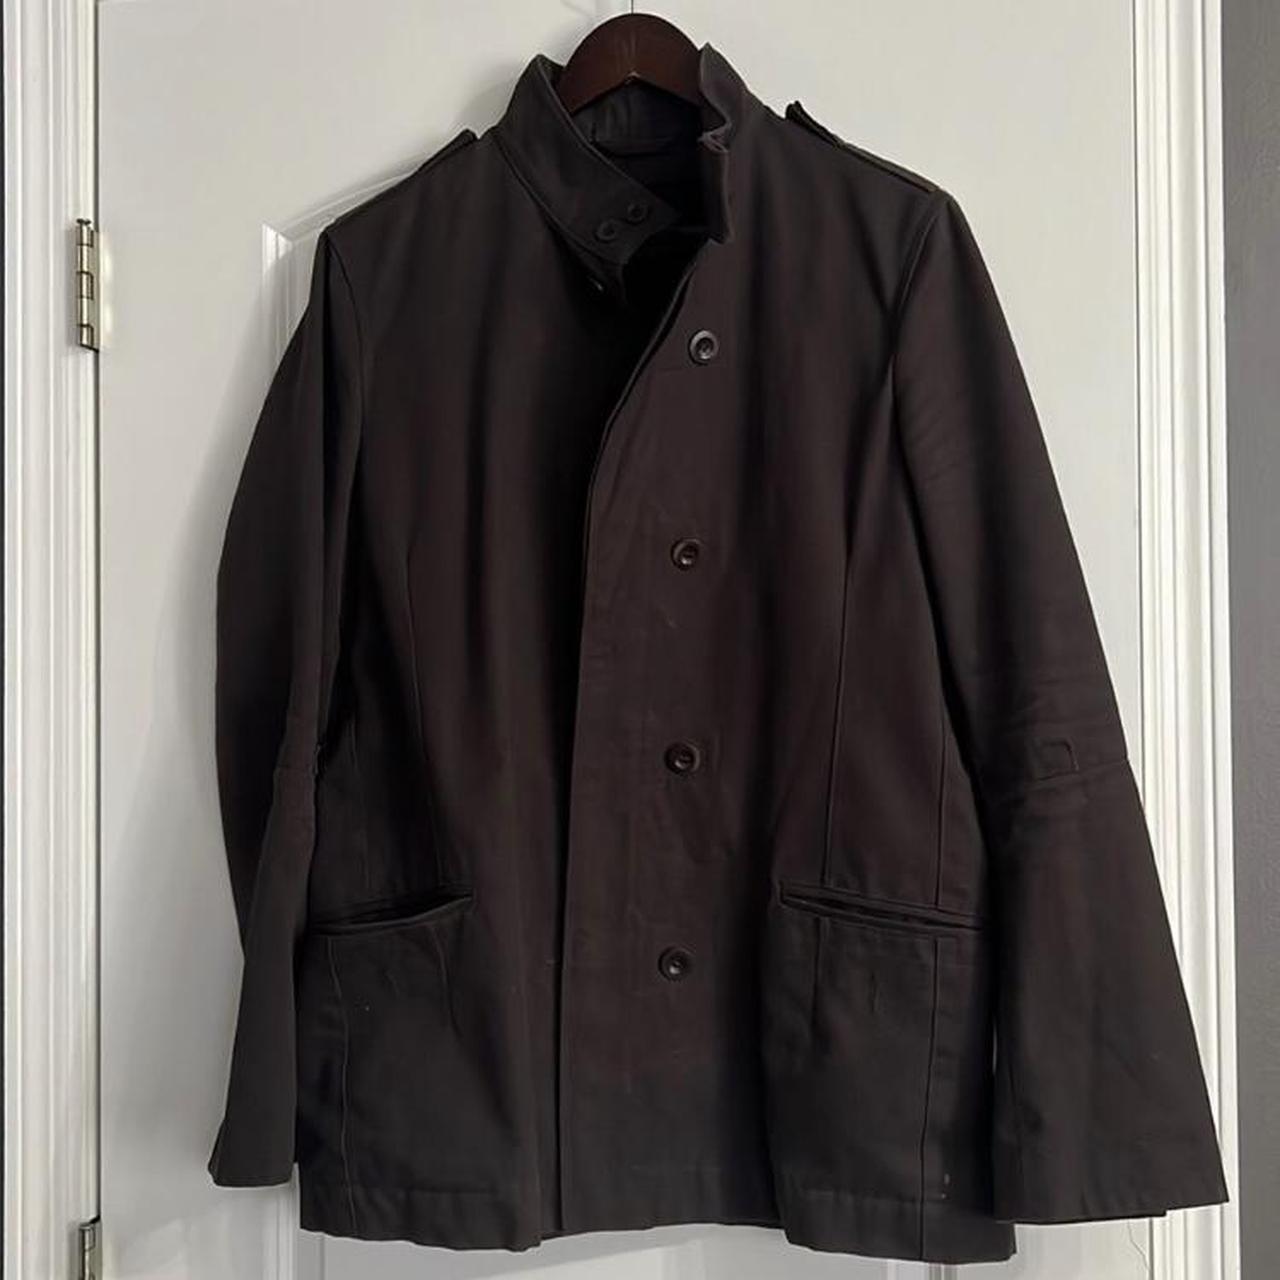 Reiss chore coat/ jacket in dark green color. Double... - Depop